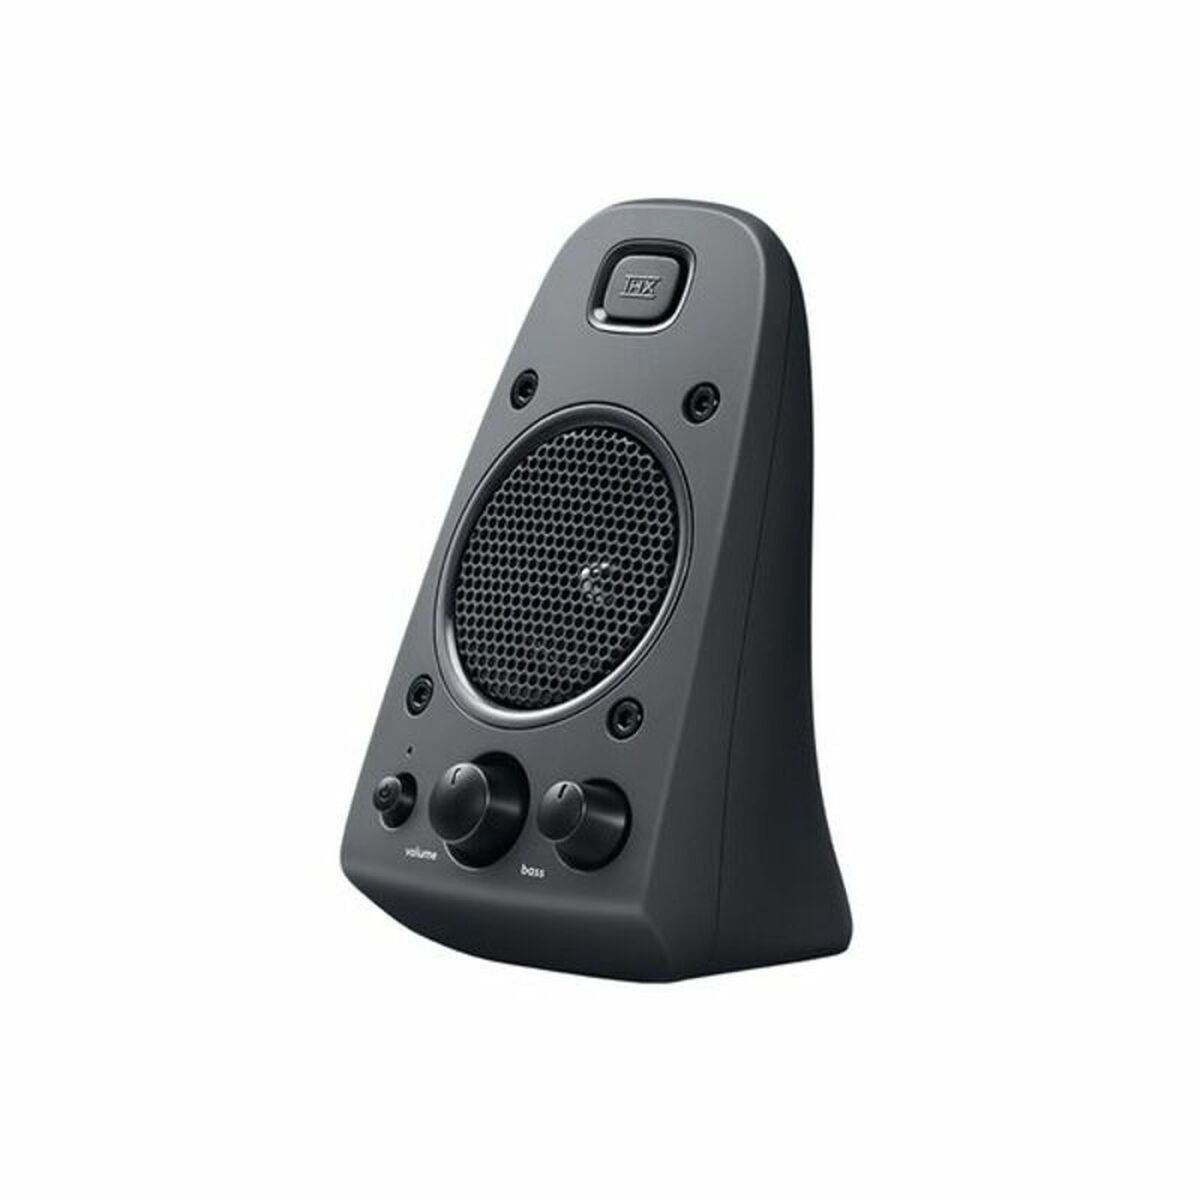 Gaming speaker Logitech 980-001256 2.1 Black 200W